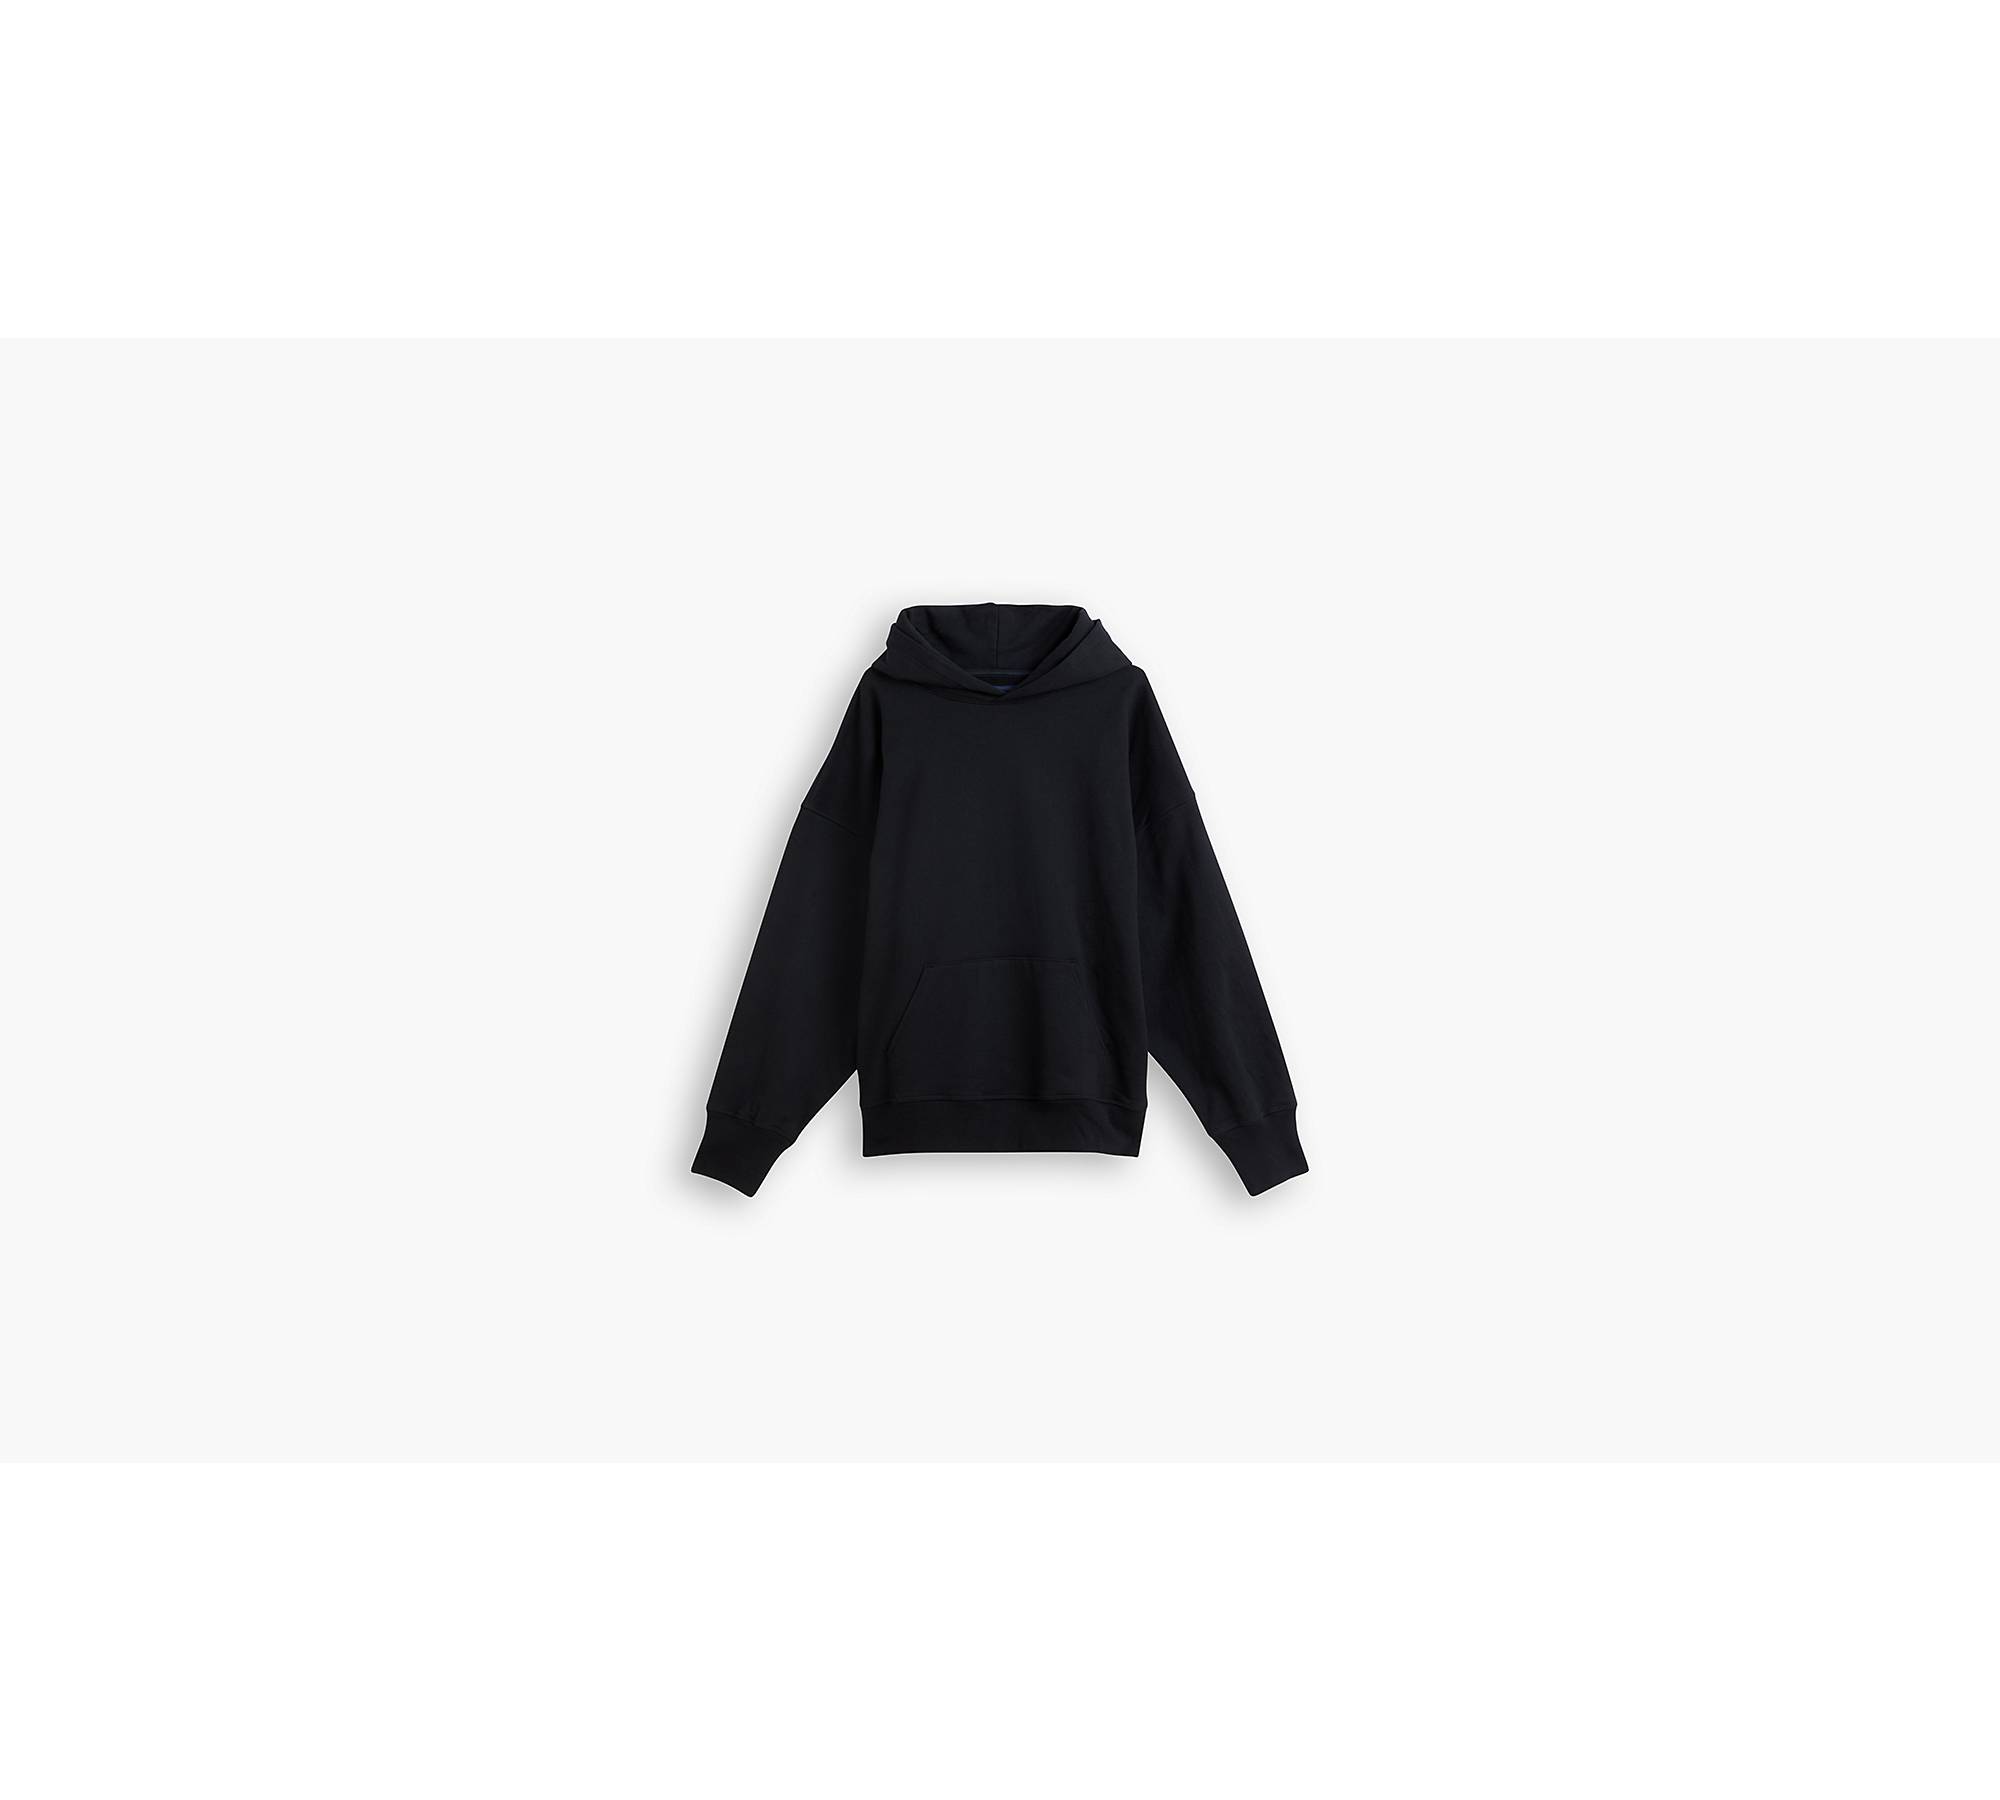 LEVIS Sweat-shirt à capuche de couleur noir en soldes pas cher  2073986-noir00 - Modz